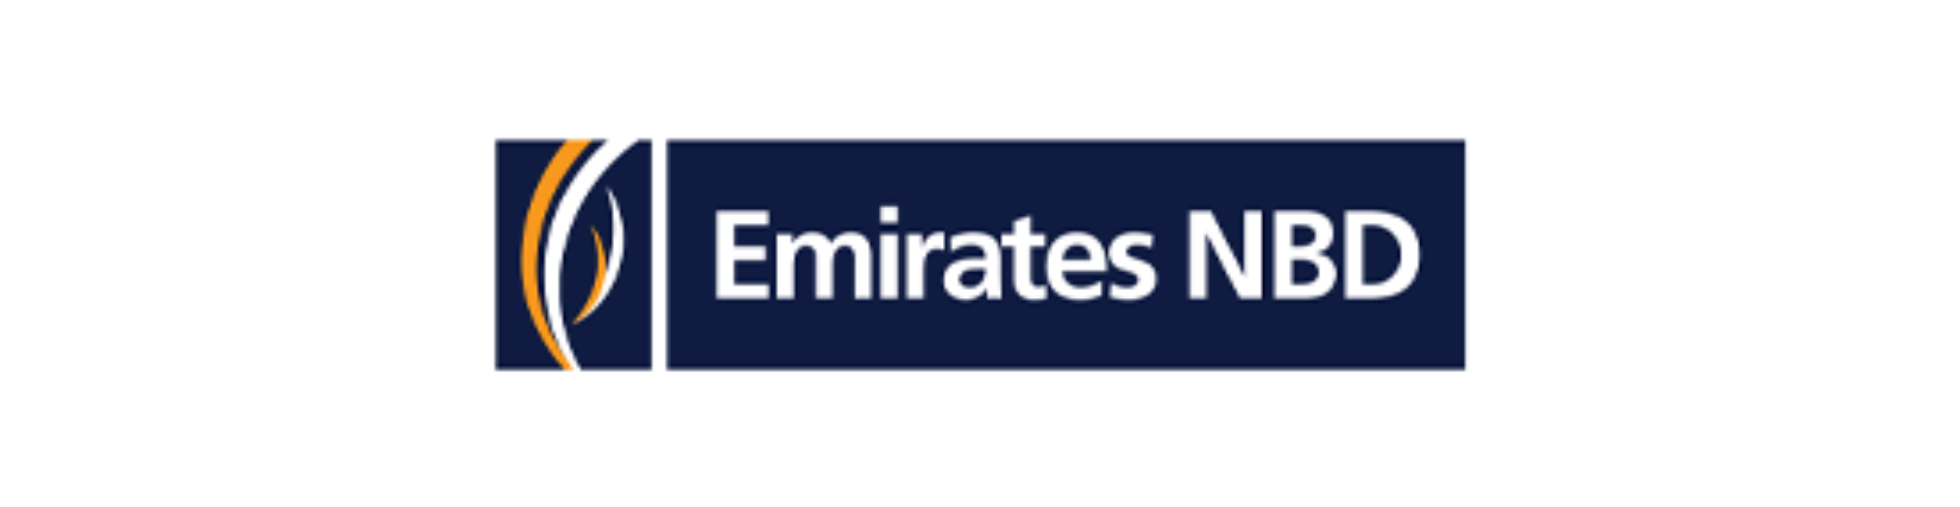 Emirates NBD 